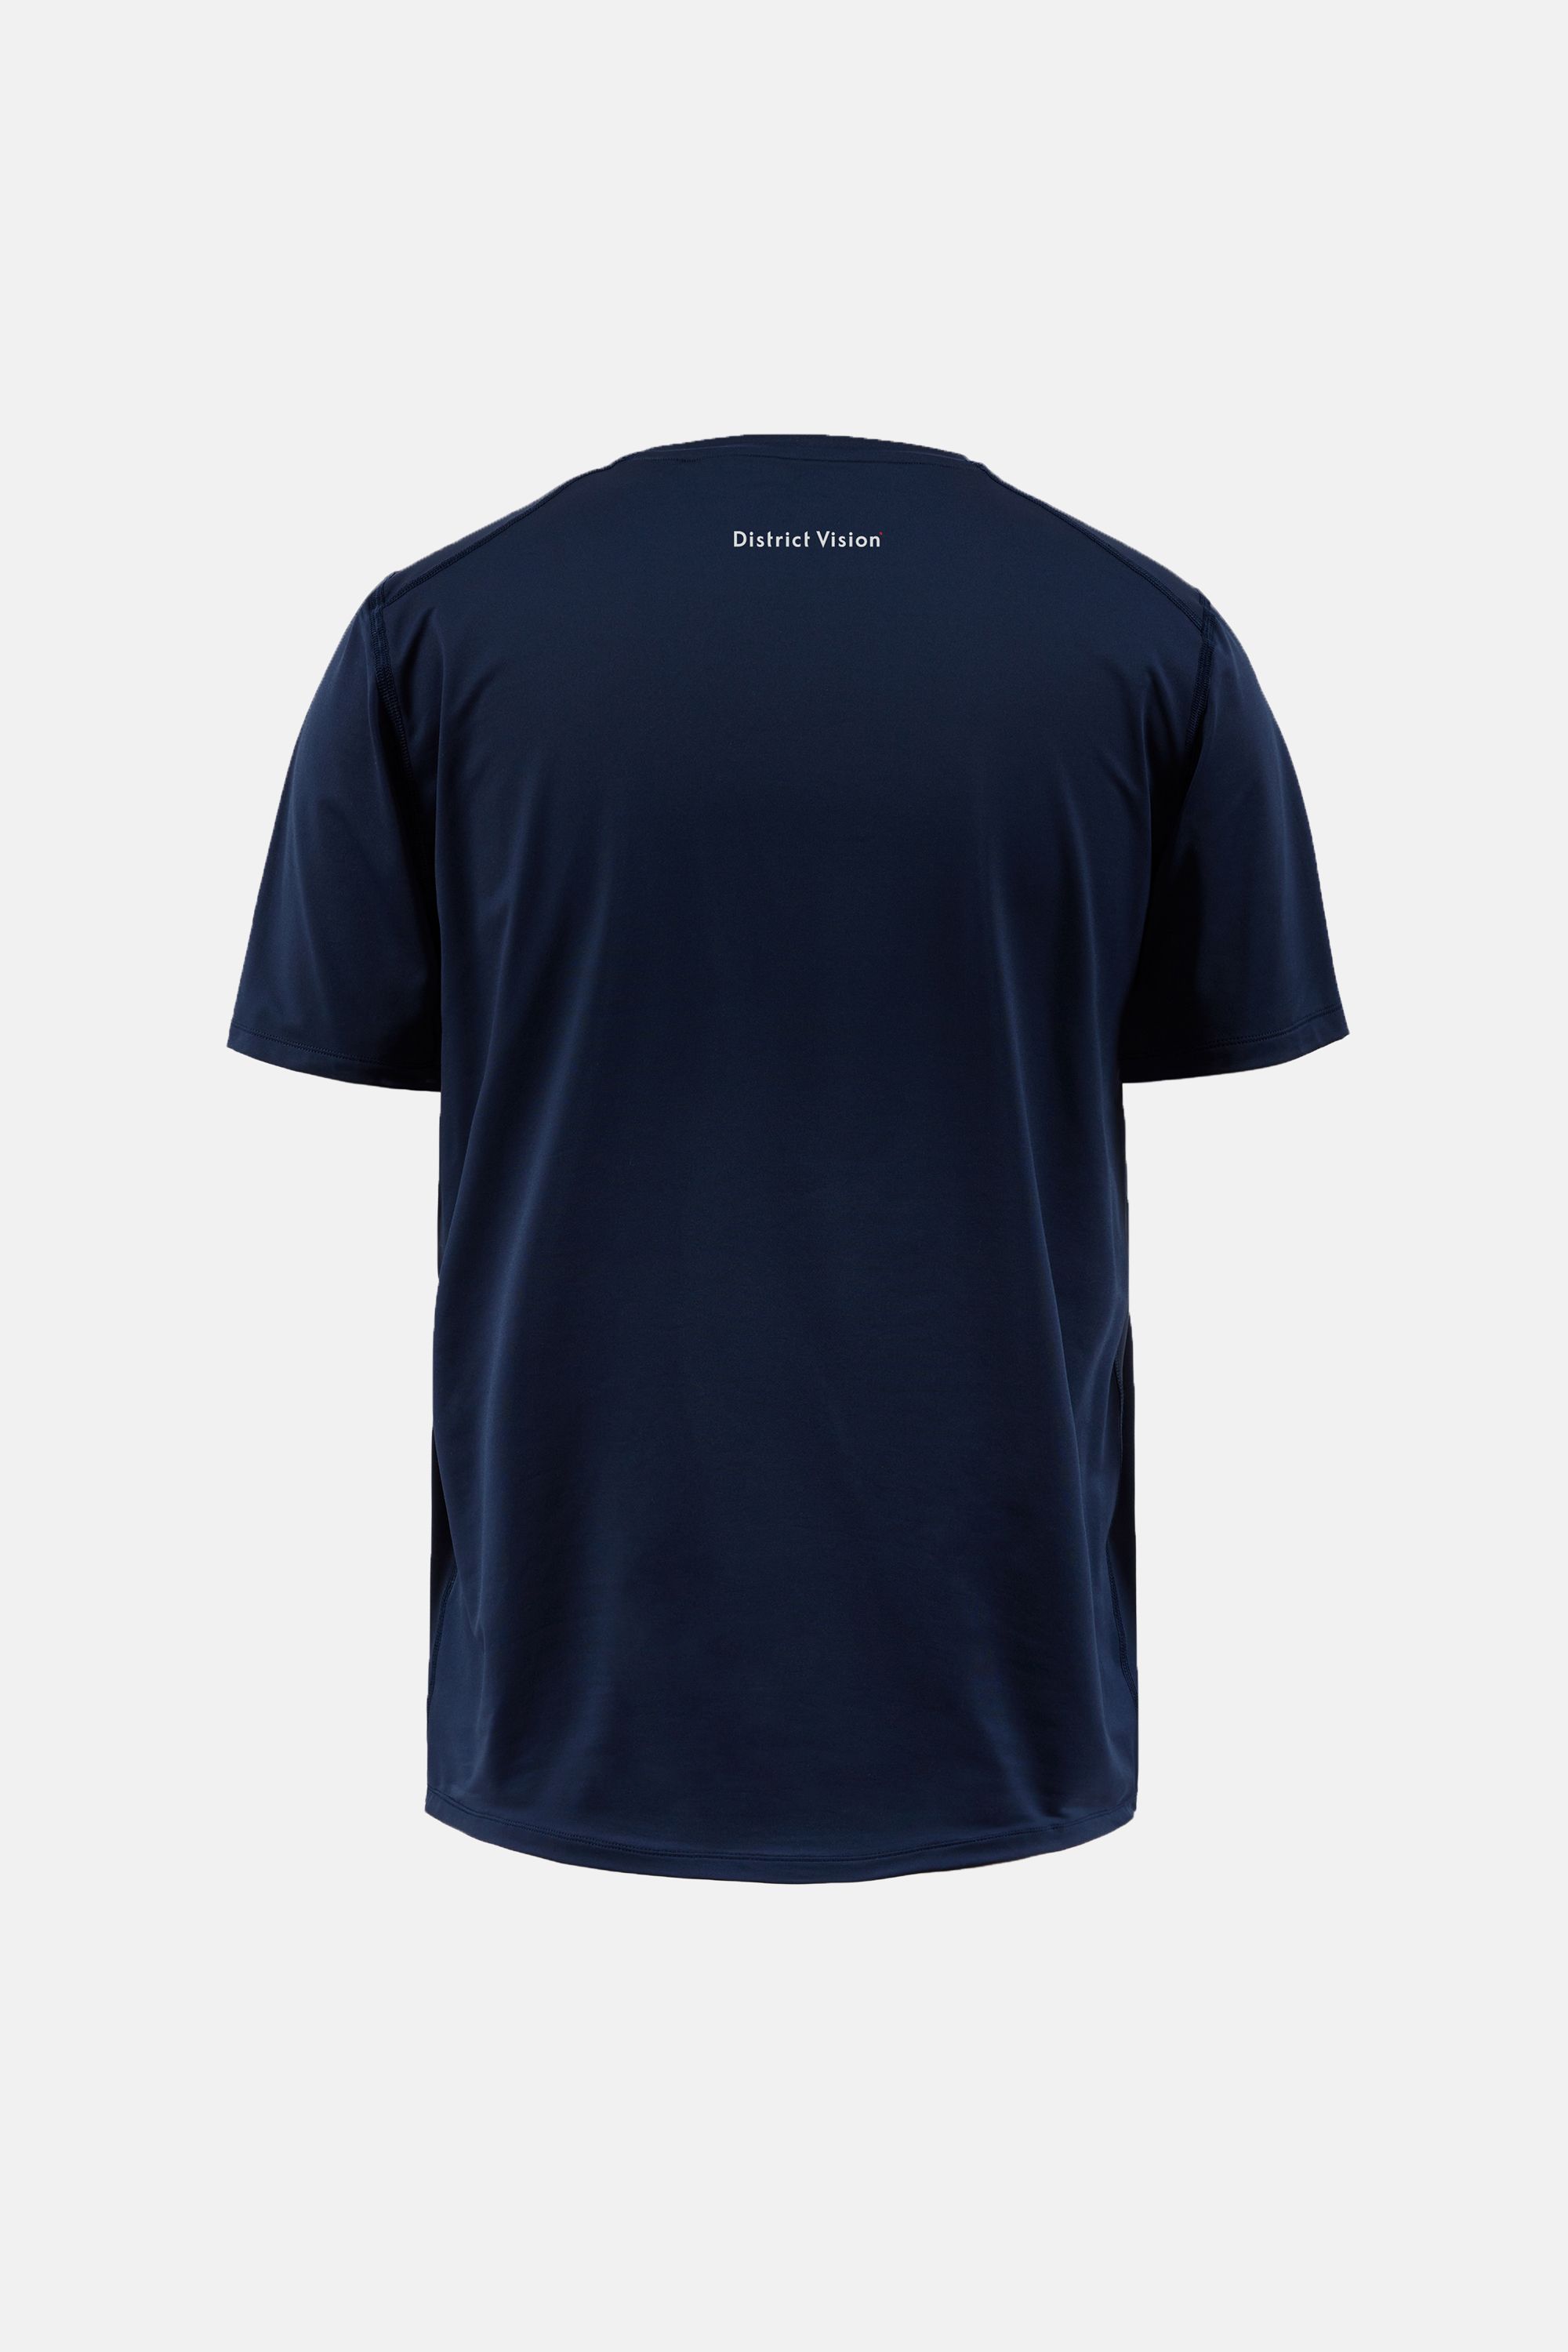 Deva Short Sleeve T-Shirt, Navy